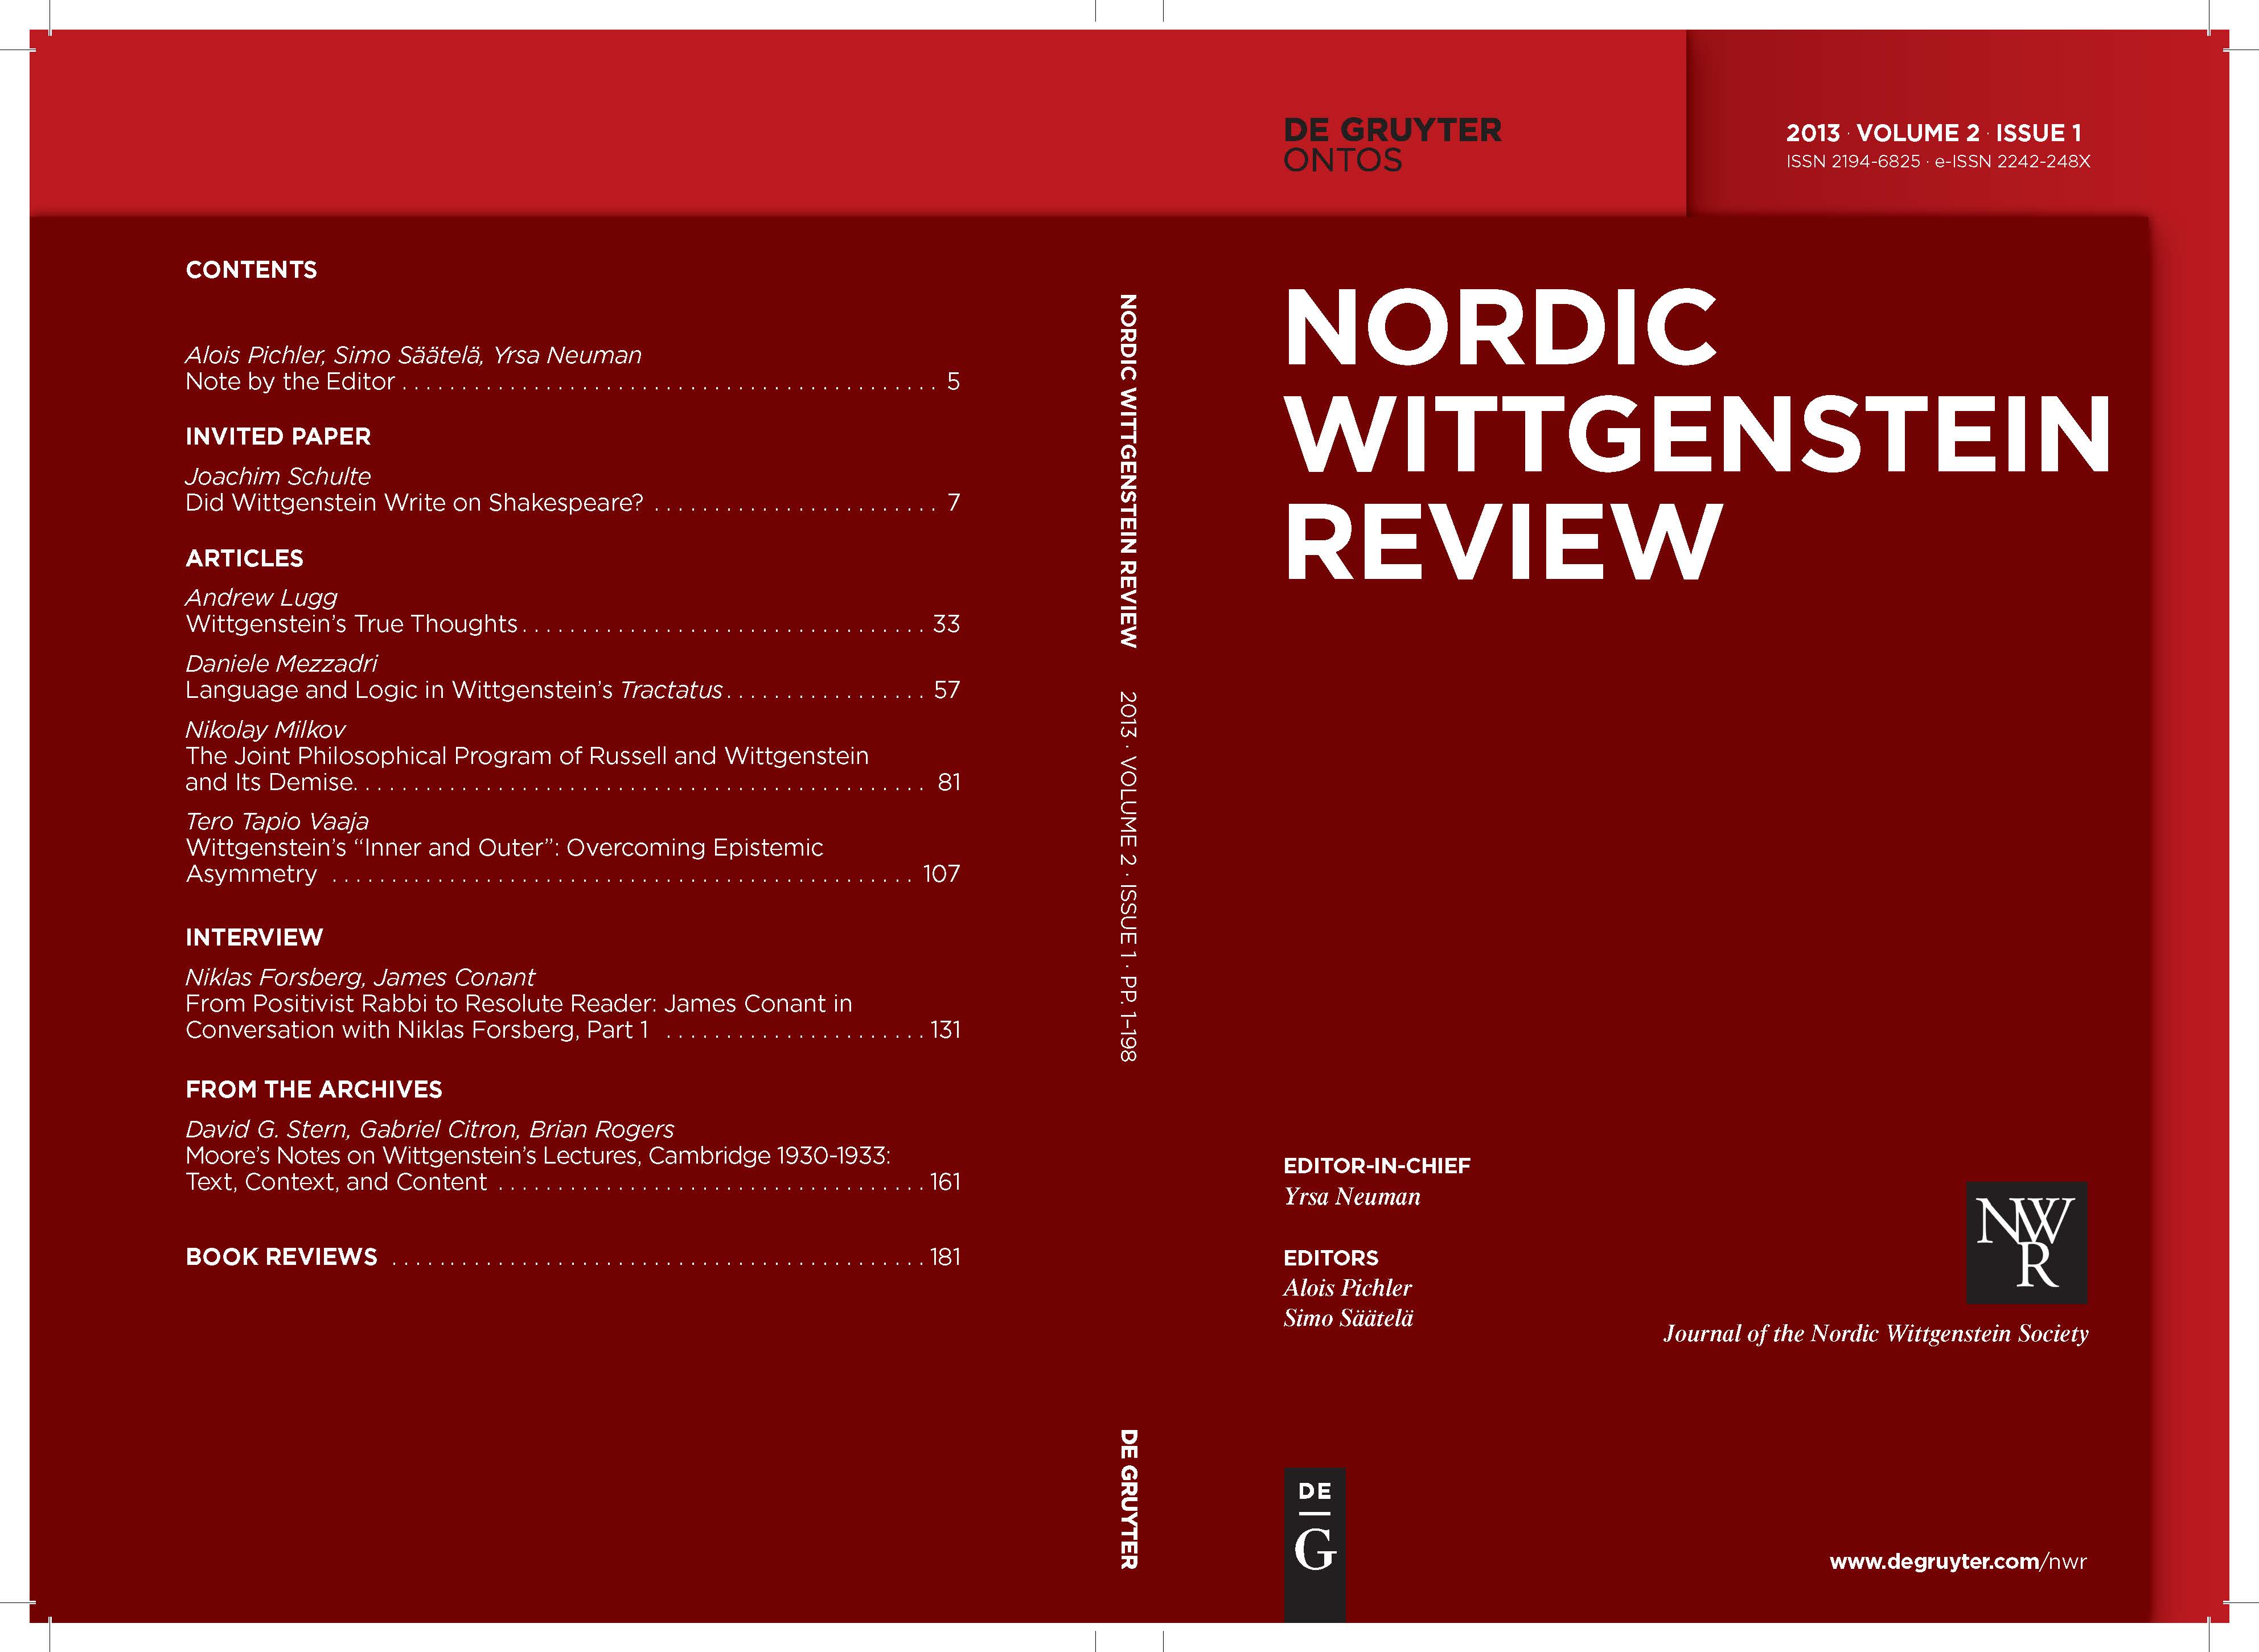 					View Vol. 2 No. 1 (2013): Volume 2 / Number 1 (Aug 2013), A. Pichler, S. Säätelä, Y. Neuman (eds.)
				